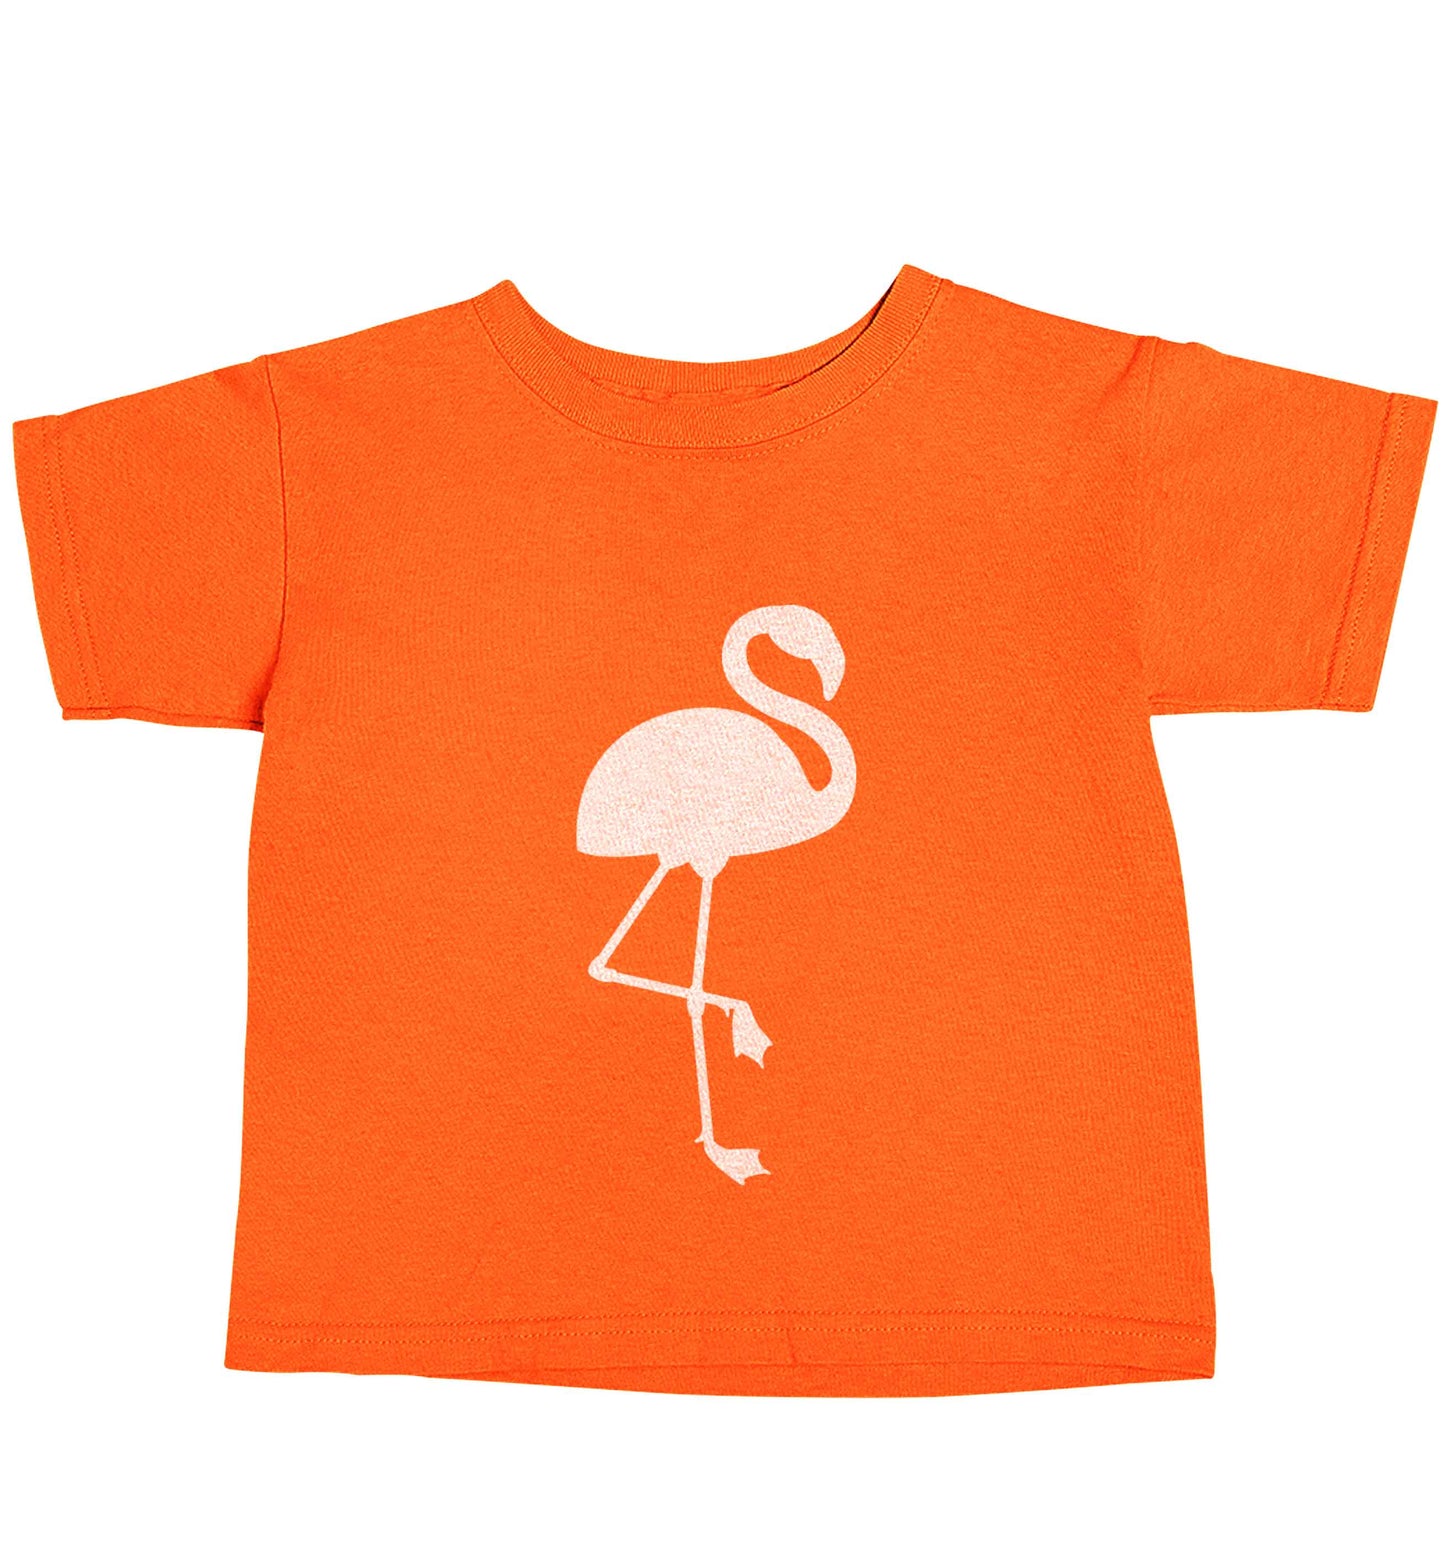 Pink flamingo orange baby toddler Tshirt 2 Years